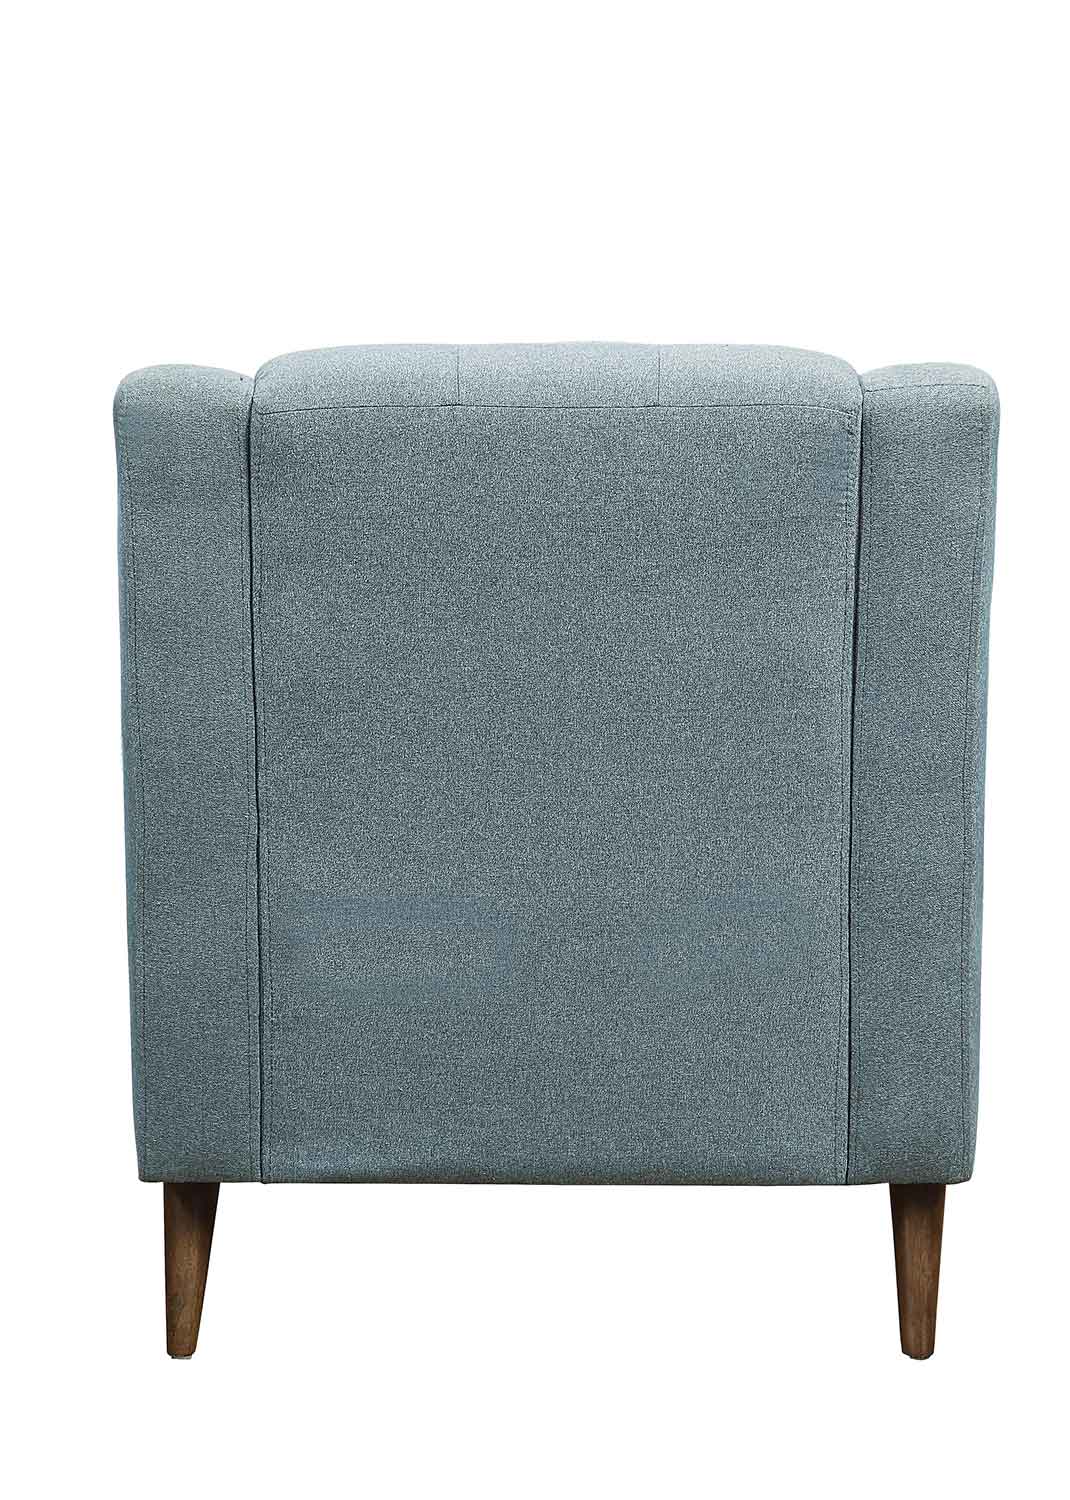 Homelegance Basenji Chair - Gray